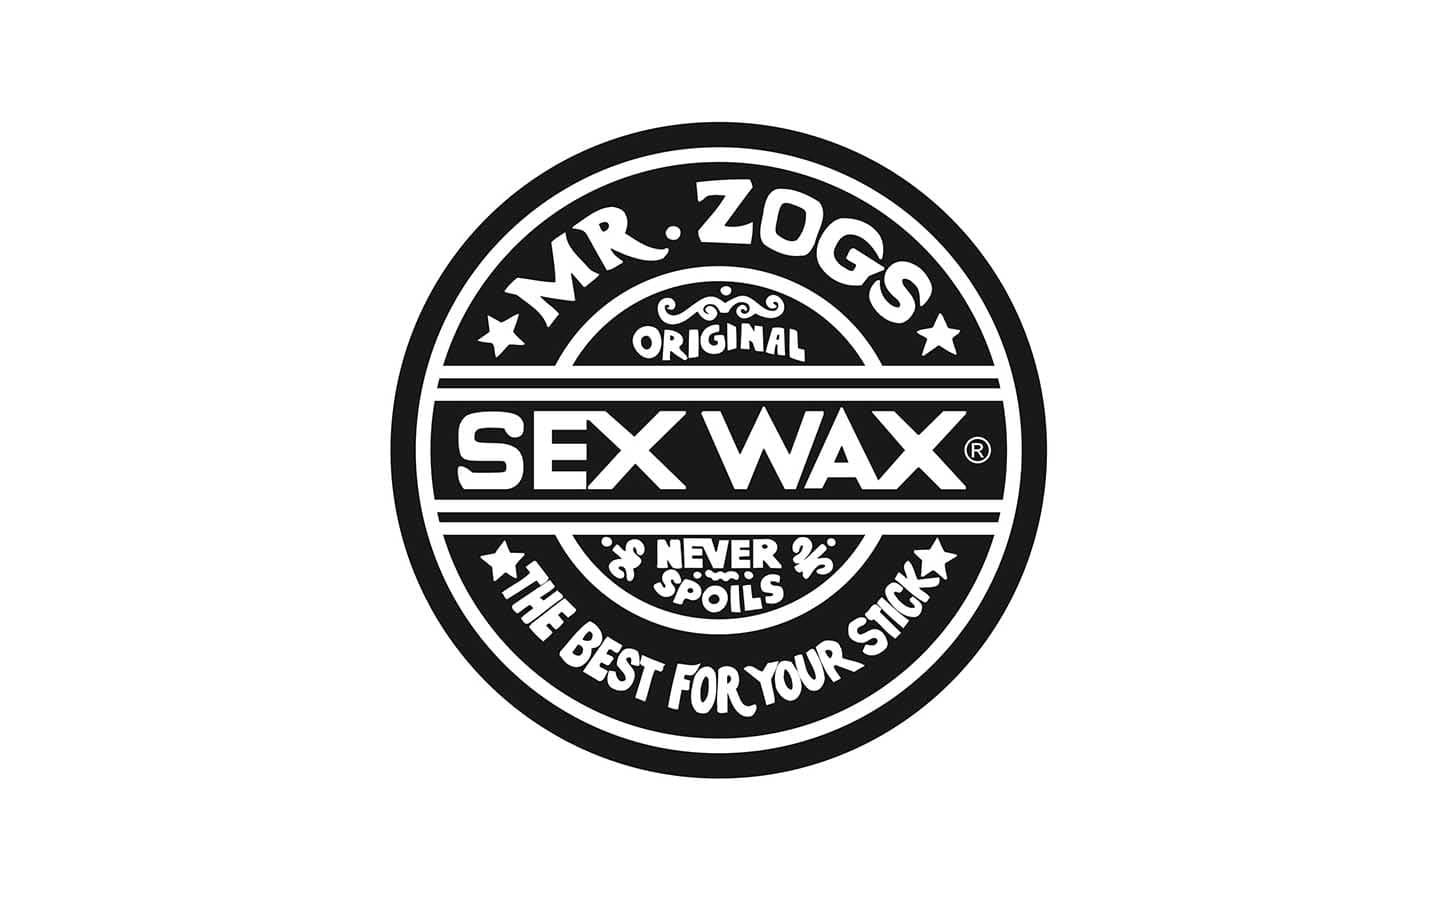 Sex Wax – Peak Distribution